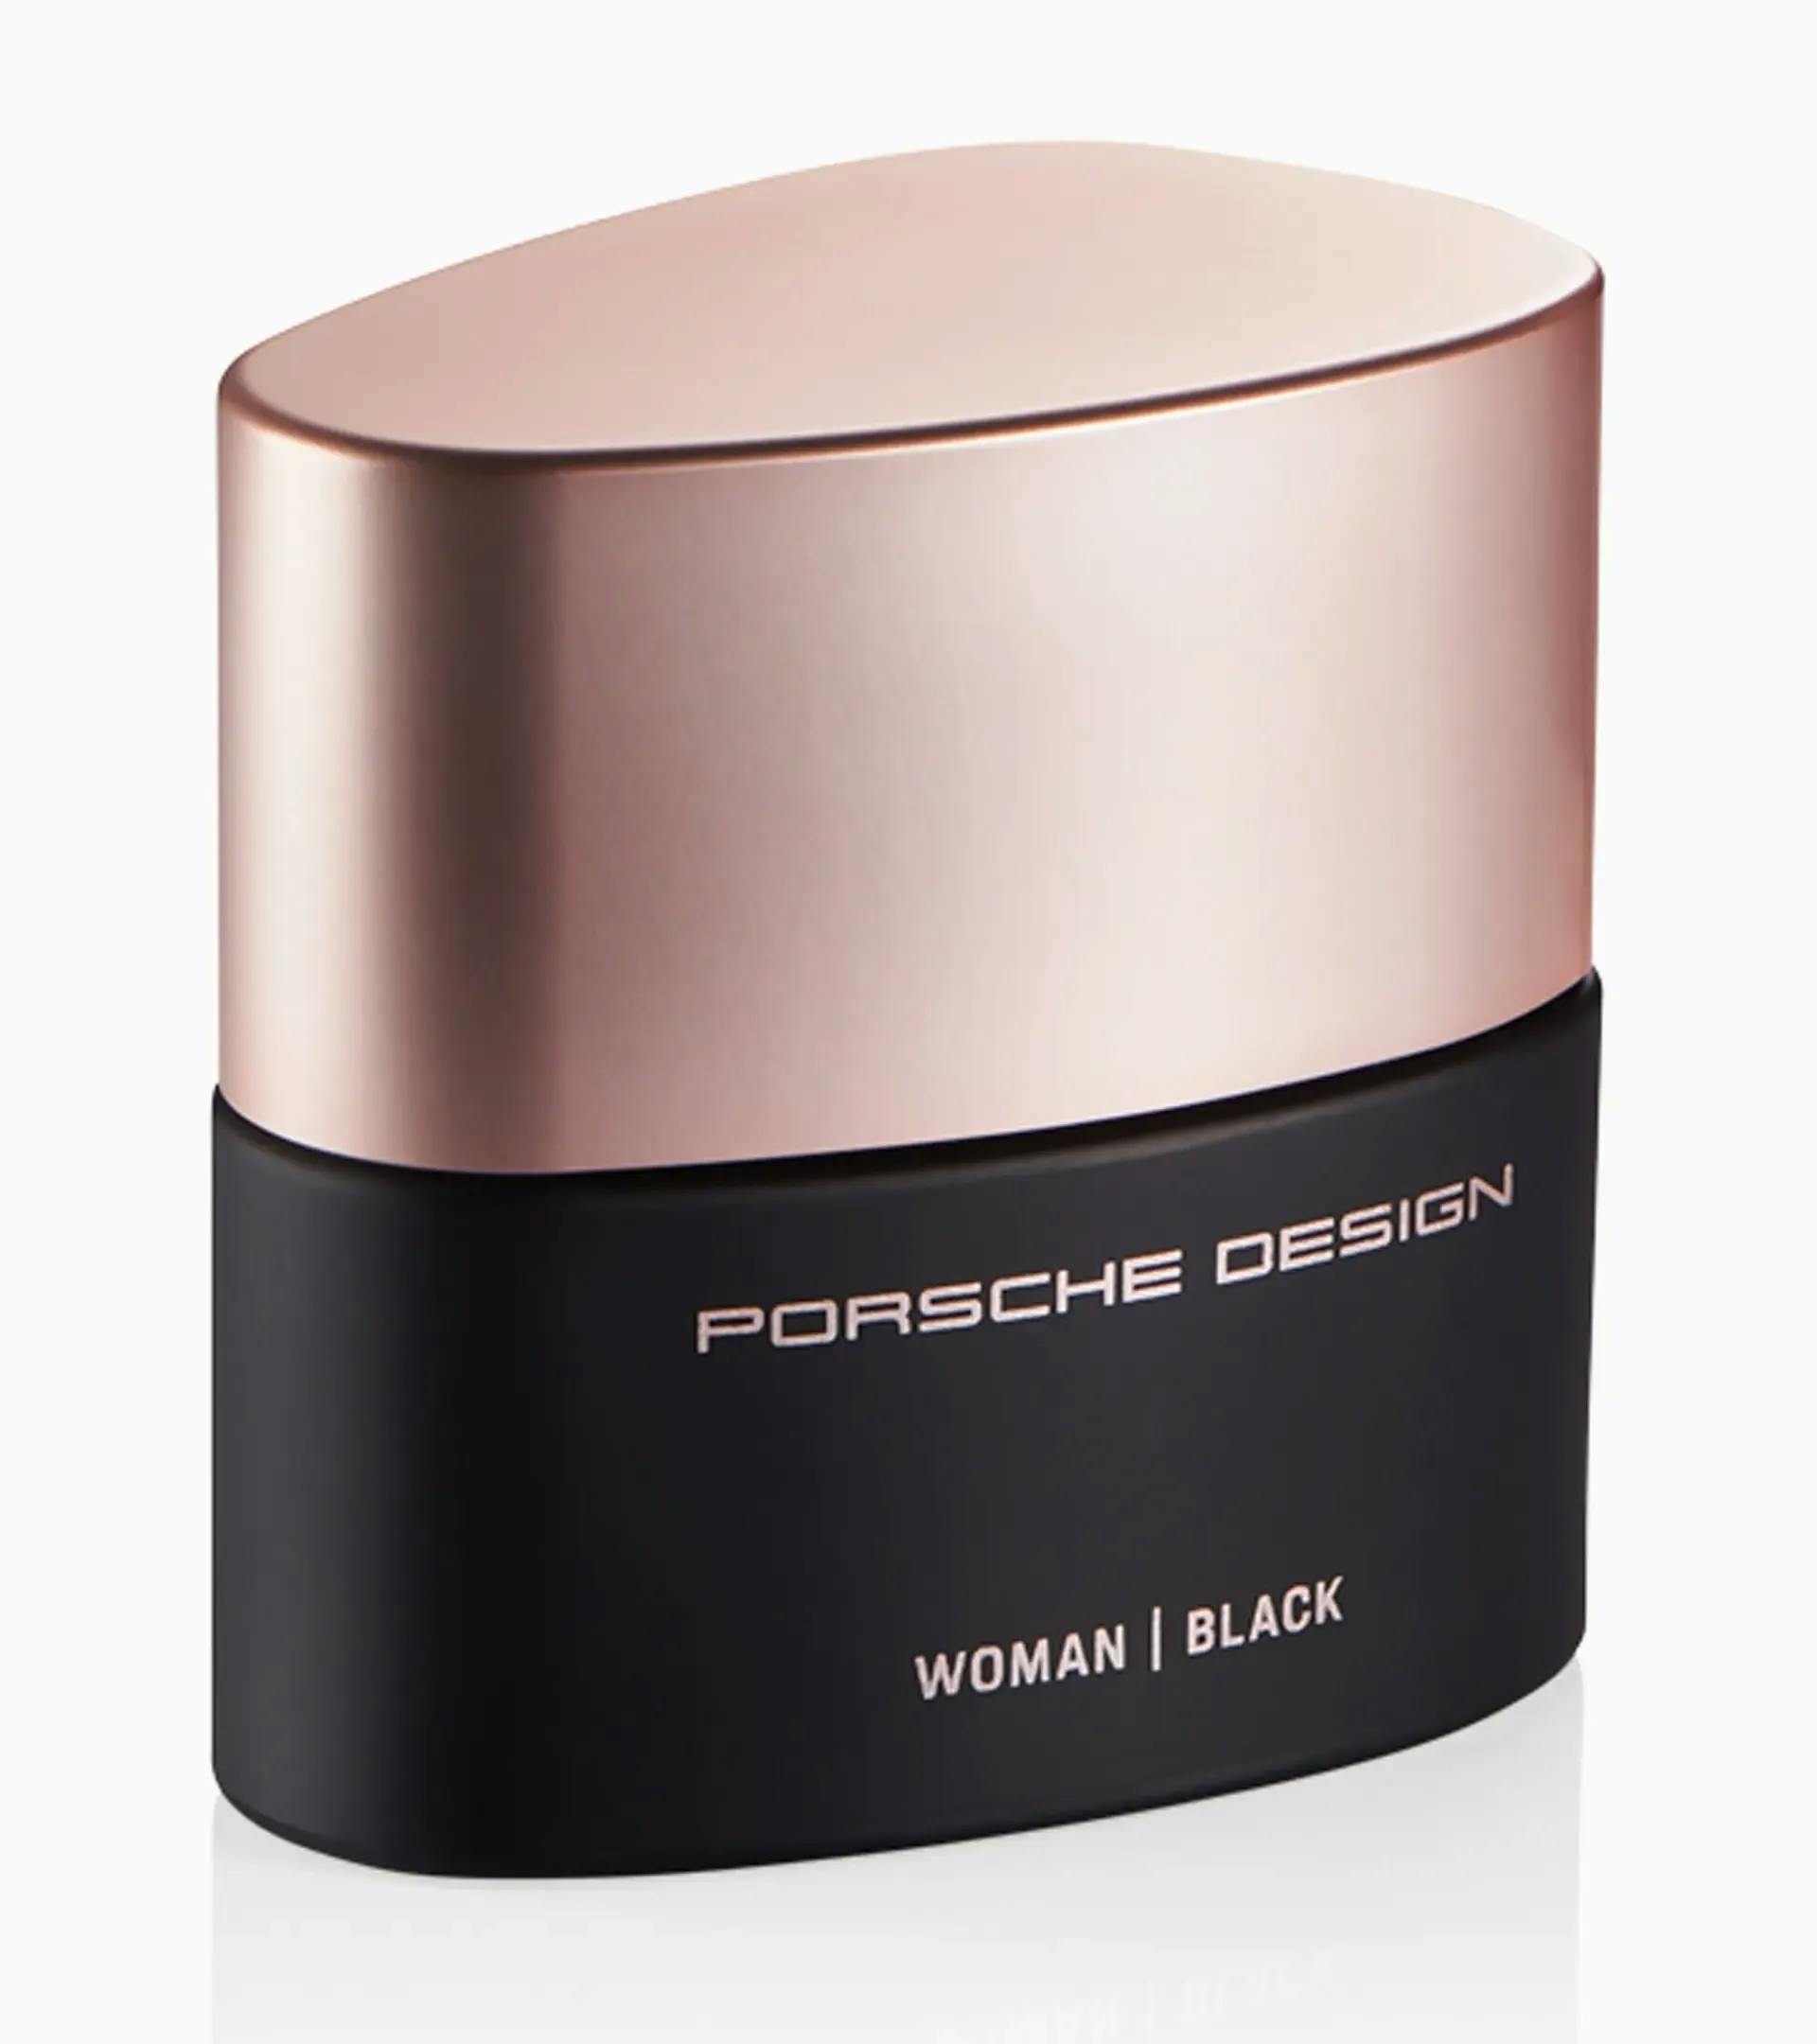 Porsche Design Woman | Black Eau de parfum 1